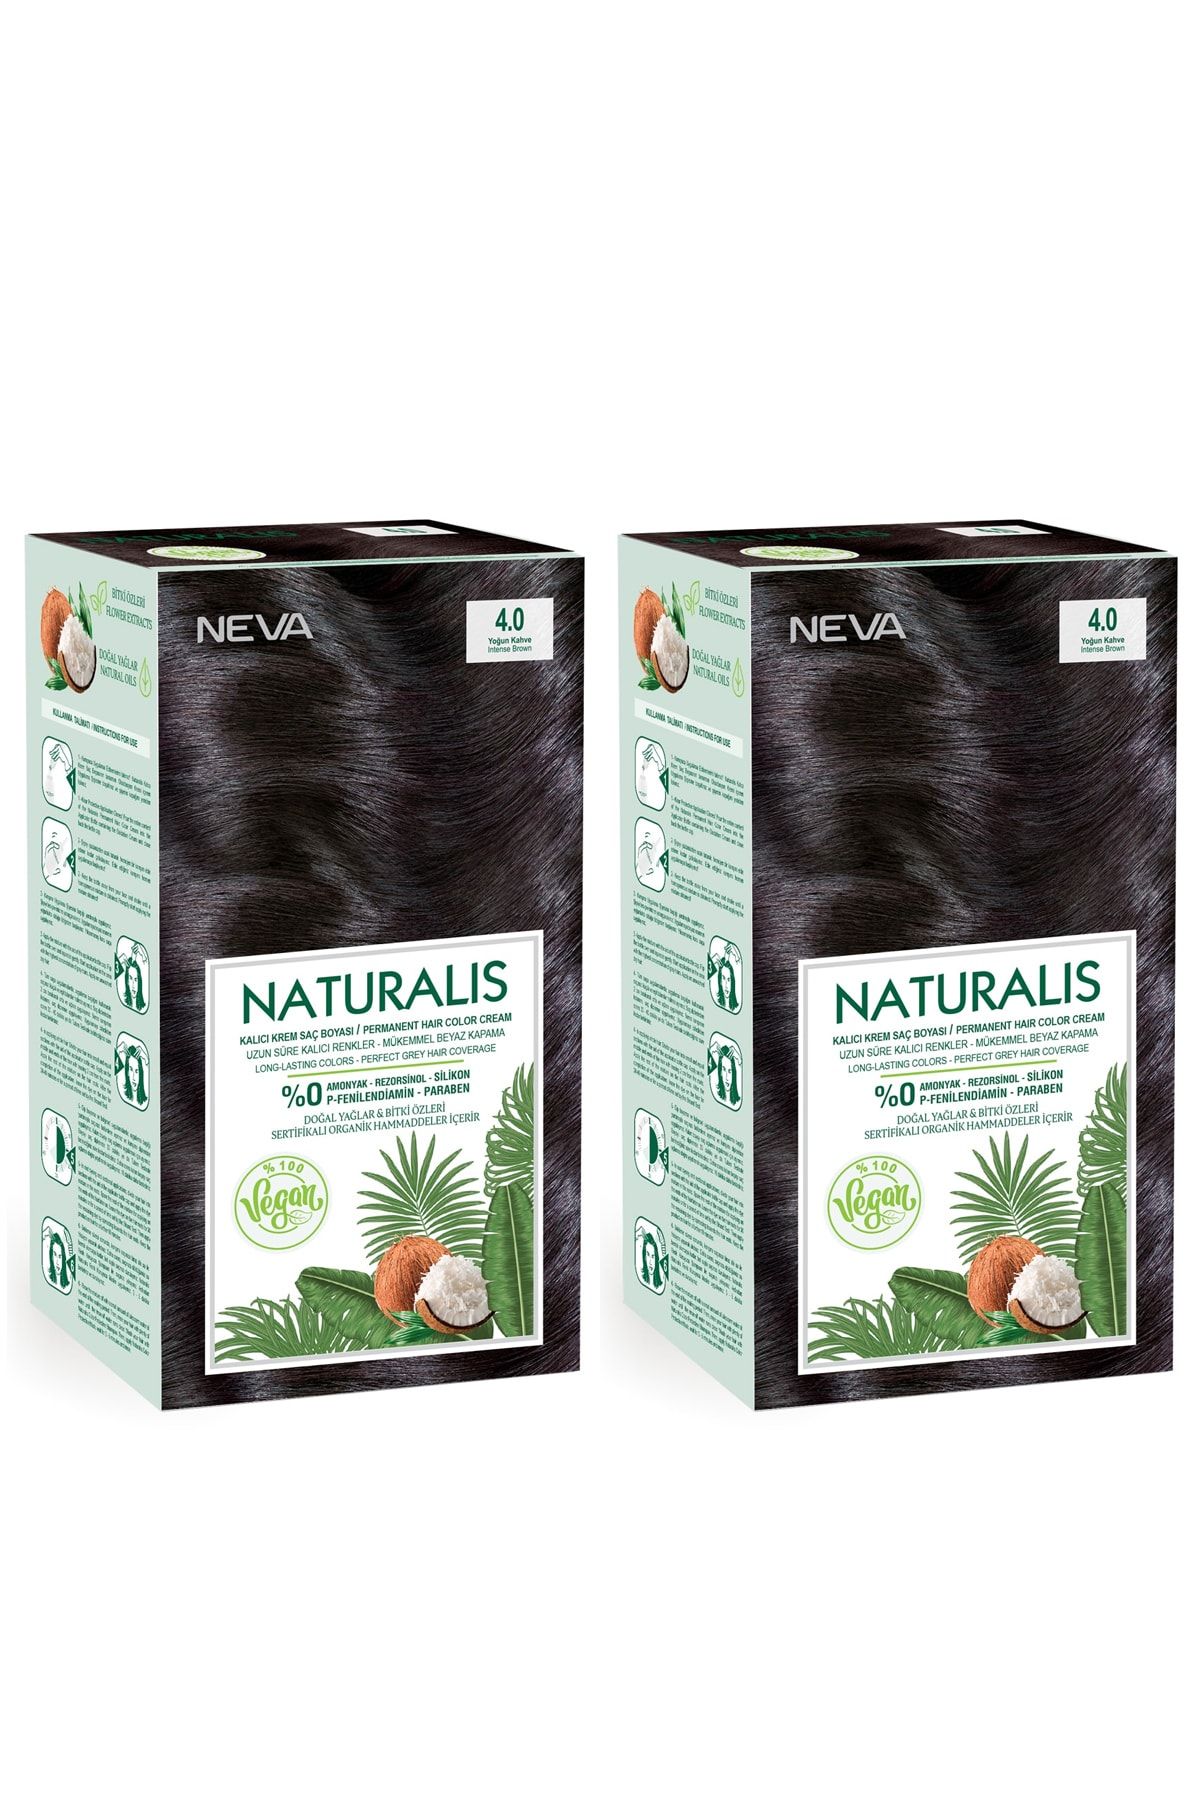 NEVA KOZMETİK Naturalis Saç Boyası 4.0 Yoğun Kahve %100 Vegan 2'li Set